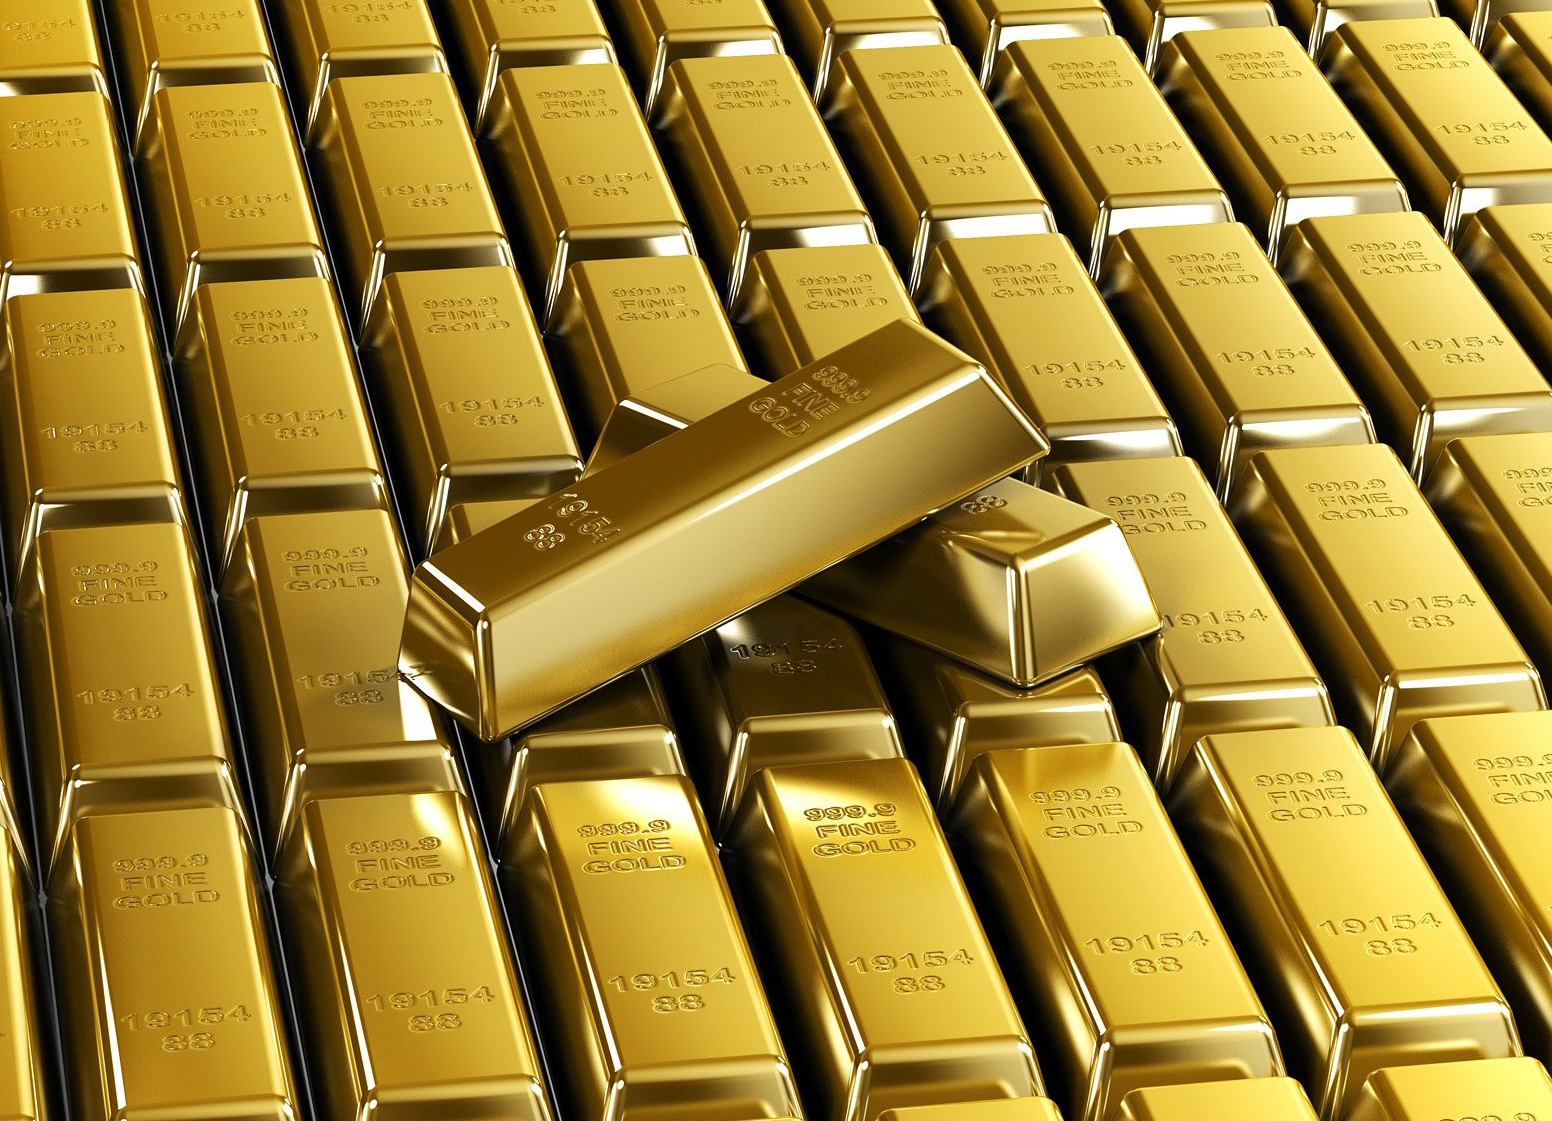 Цена 1 грамма золота сегодня